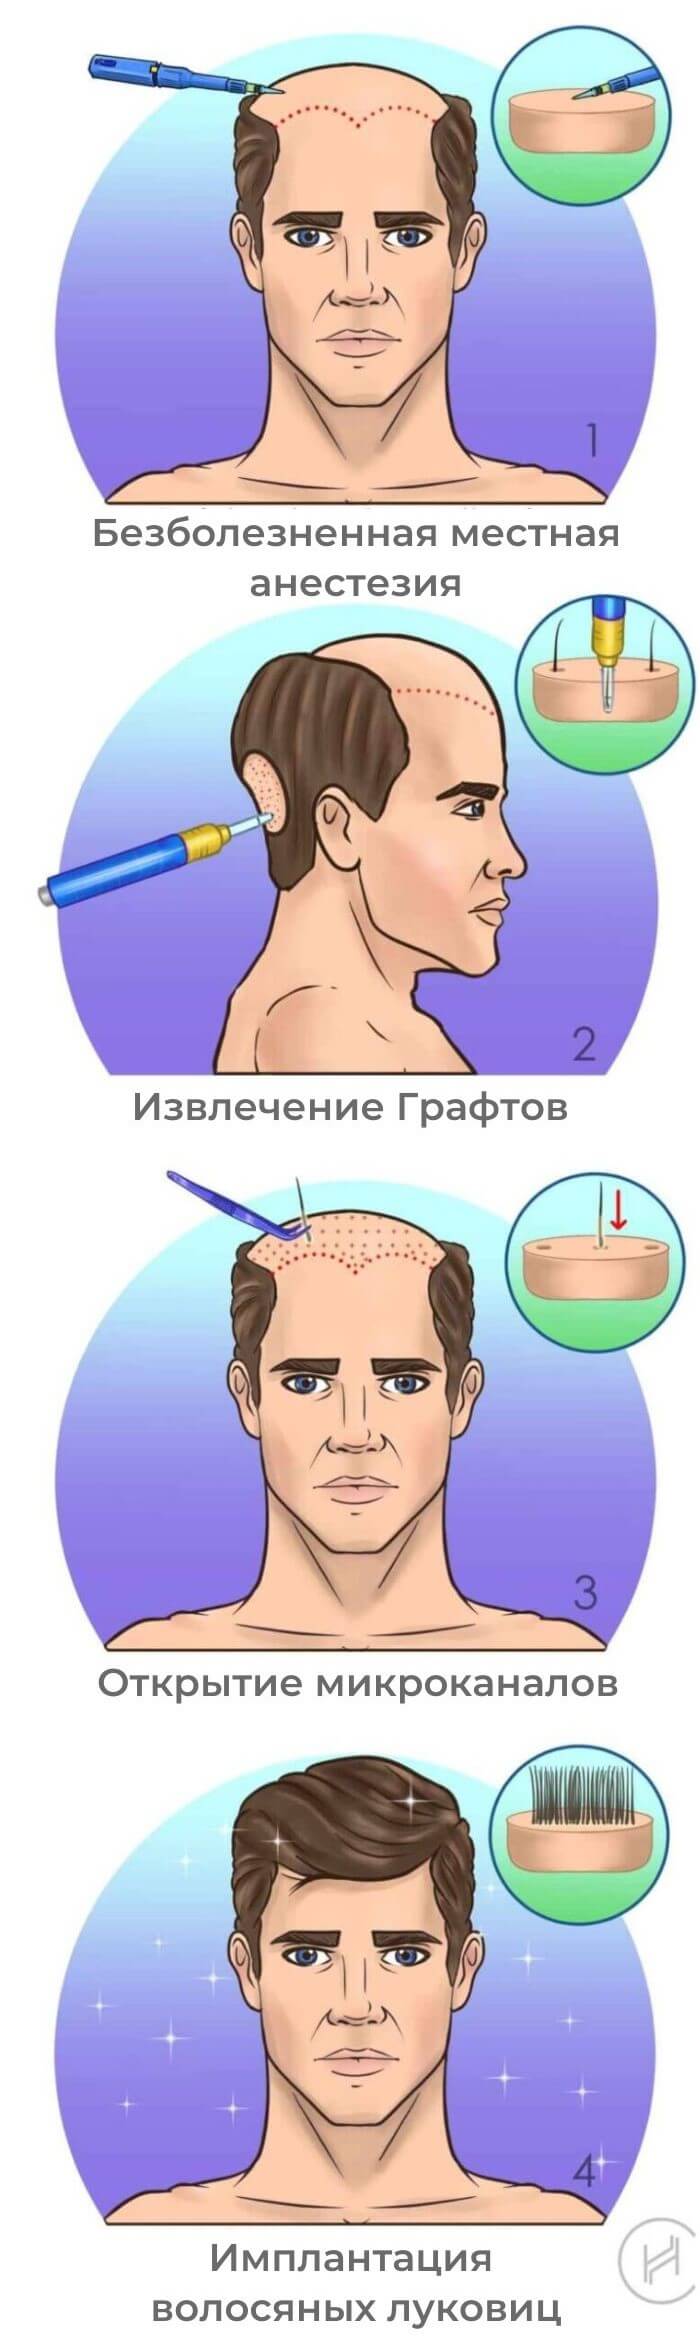 Пересадка волос методом FUE - четыре шага